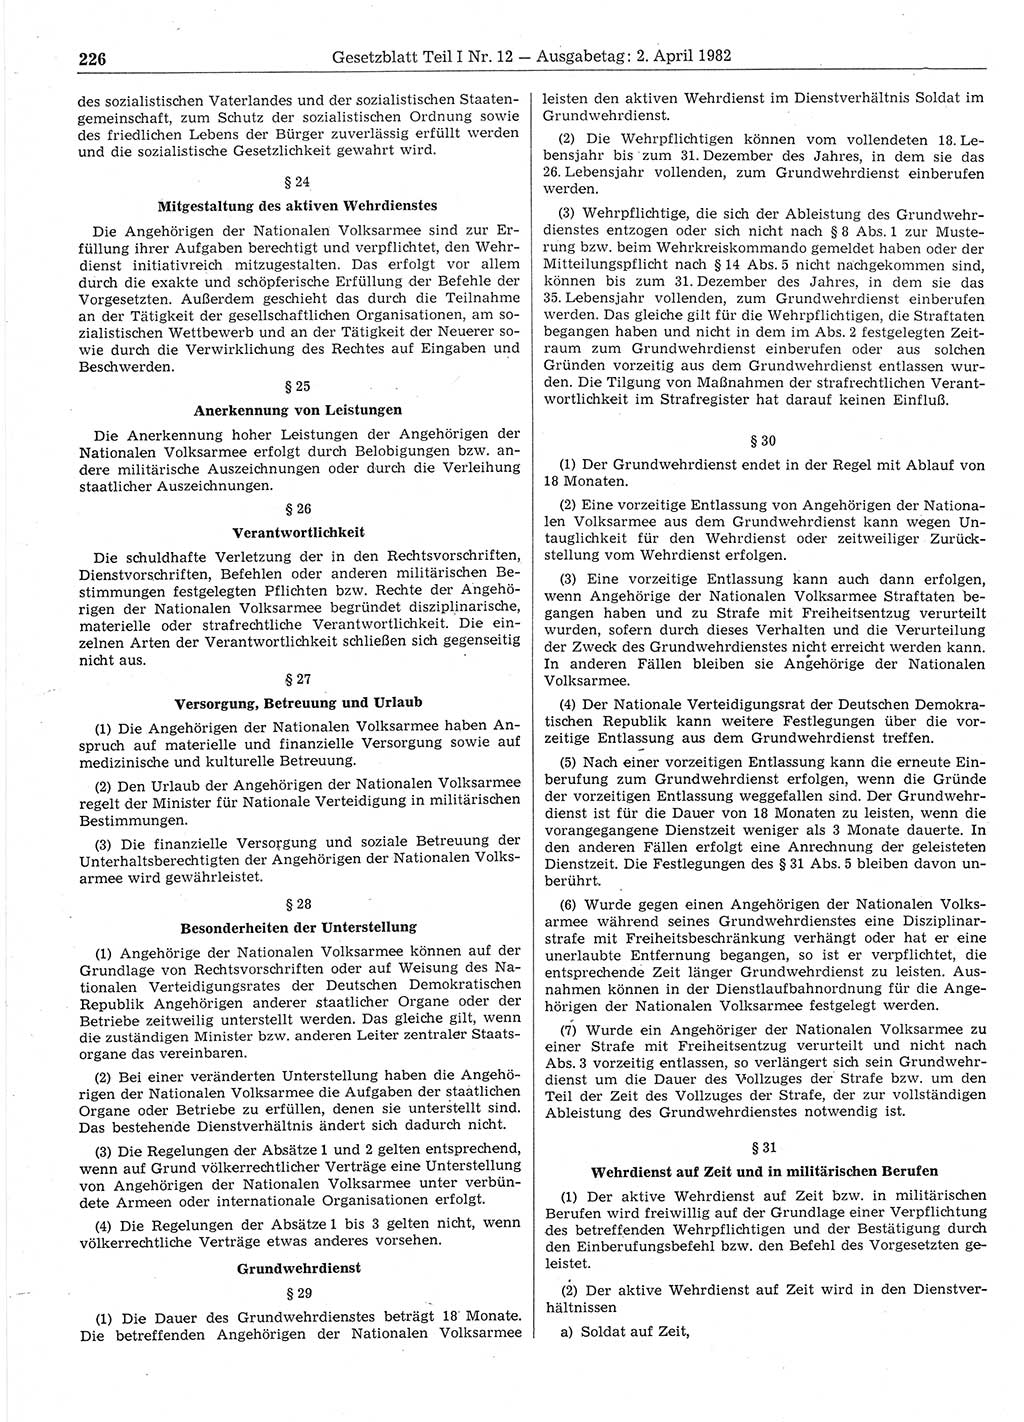 Gesetzblatt (GBl.) der Deutschen Demokratischen Republik (DDR) Teil Ⅰ 1982, Seite 226 (GBl. DDR Ⅰ 1982, S. 226)